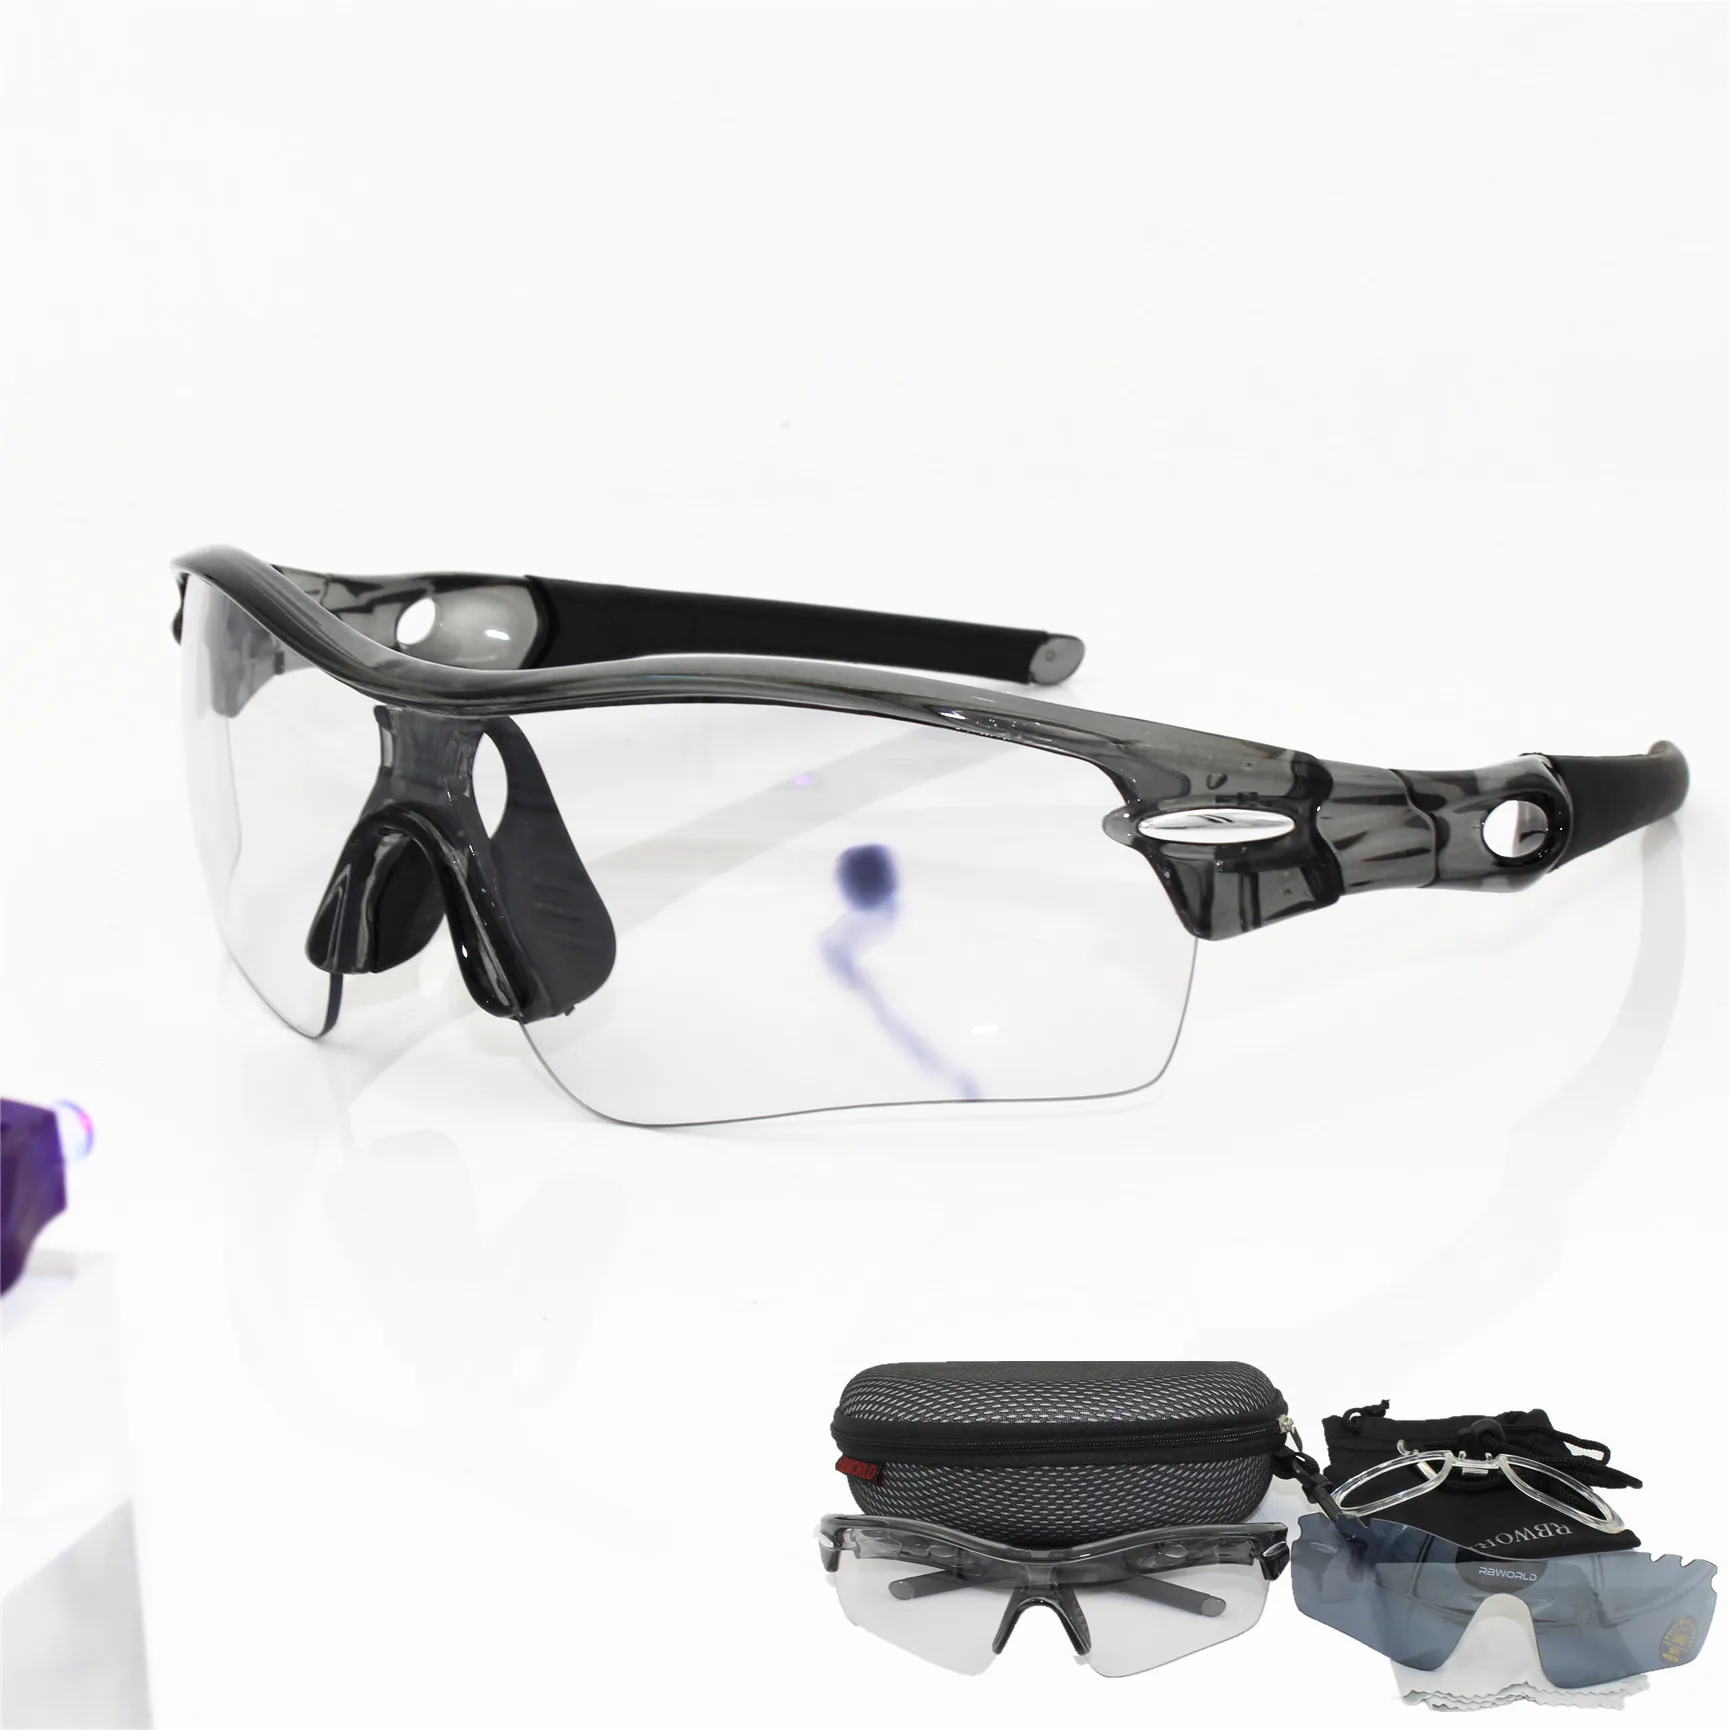 Фотохромные солнцезащитные очки Авто TR90 спорта Велоспорт обесцвечивание очки Для мужчин Для женщин MTB дороги велосипед очки 2 объектива - Цвет: Черный